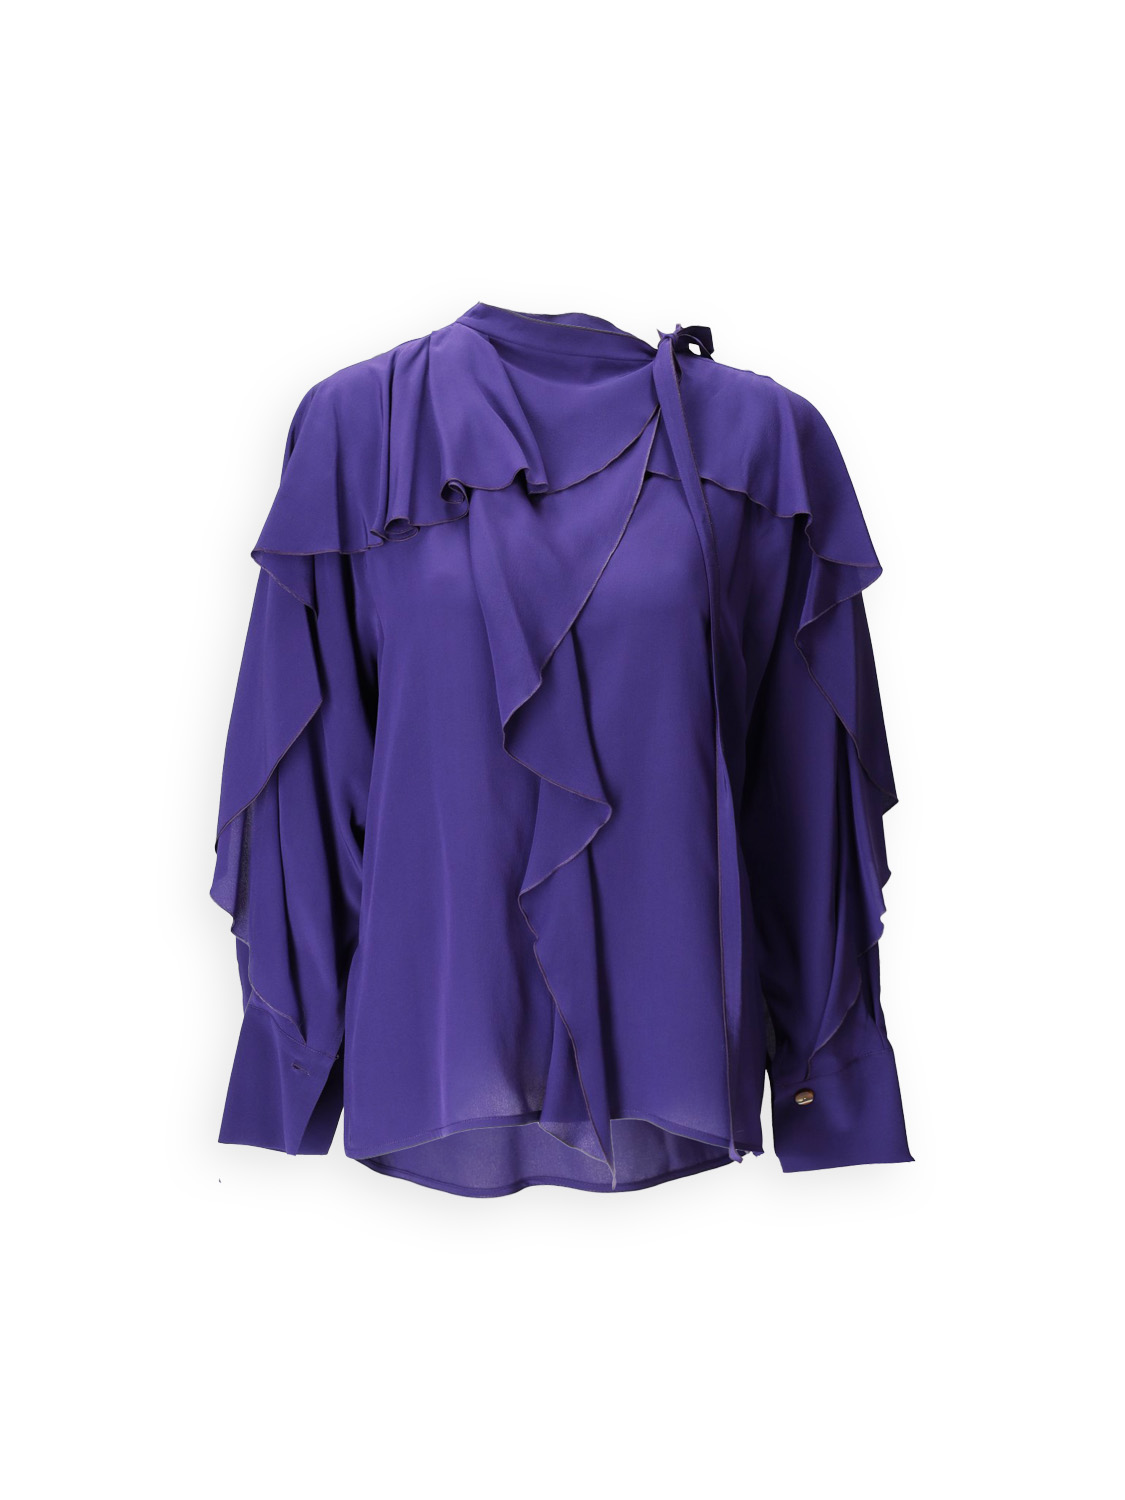 Romantic - Crêpe silk blouse with flounce details 